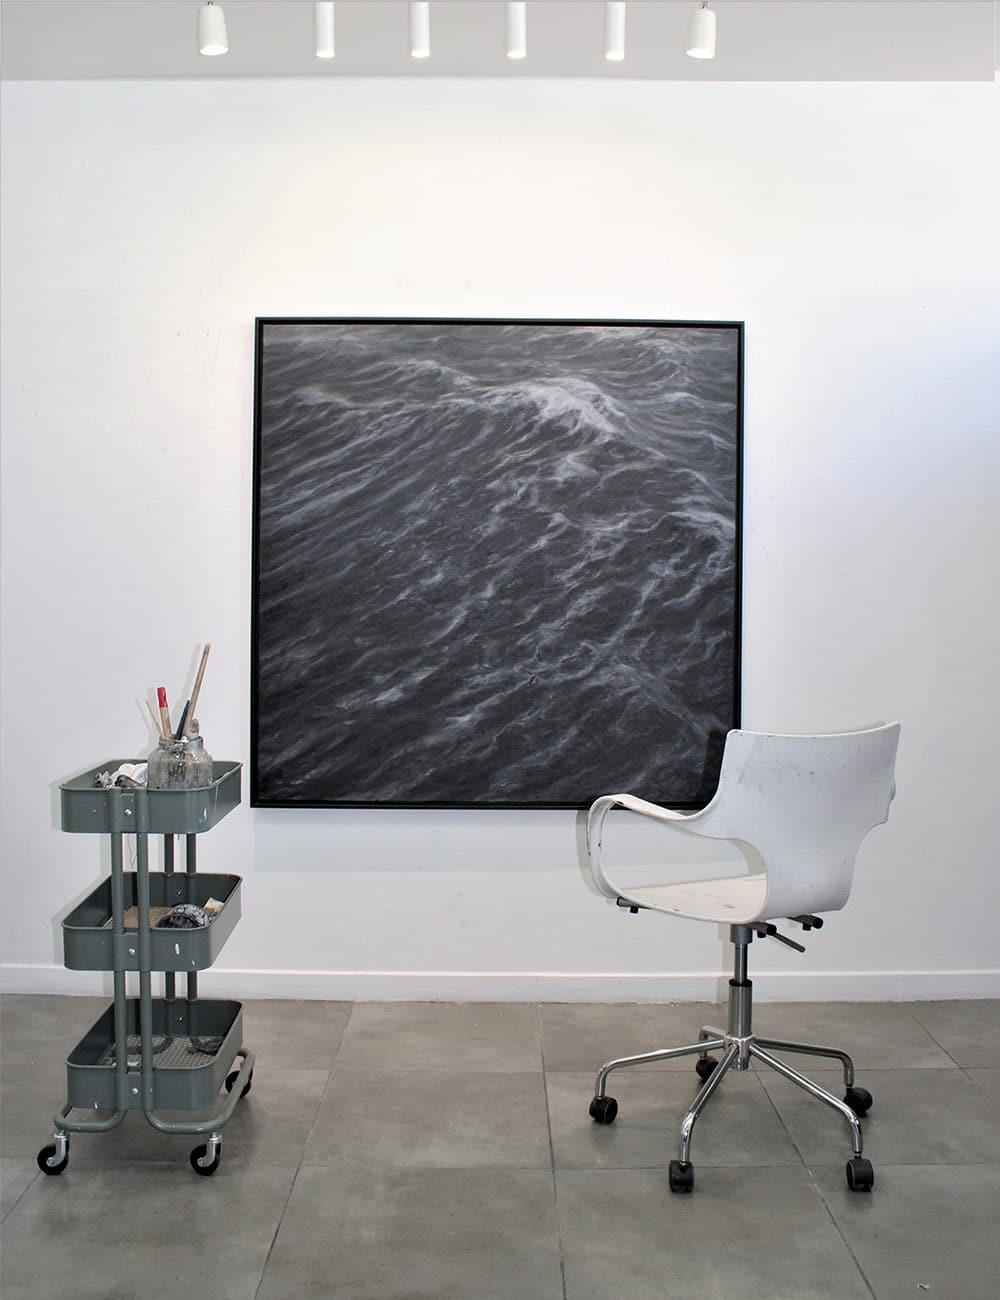 The Duel by Franco Salas Borquez - Contemporary oil painting, seascape, waves 1